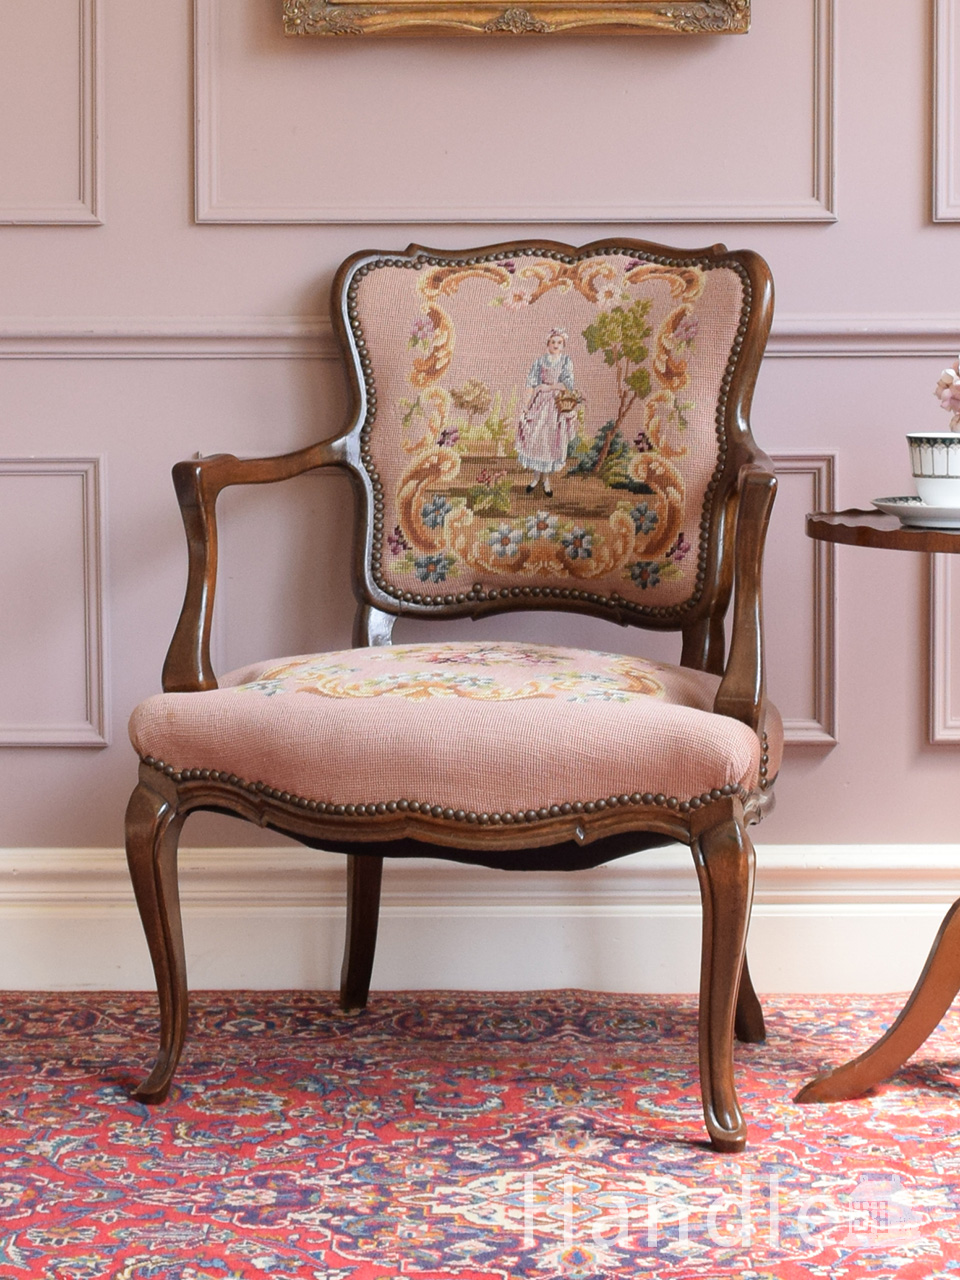 フランスから届いた一人掛けの椅子、女の子の刺繍が美しいプチポワンのアームチェア (j-744-c)